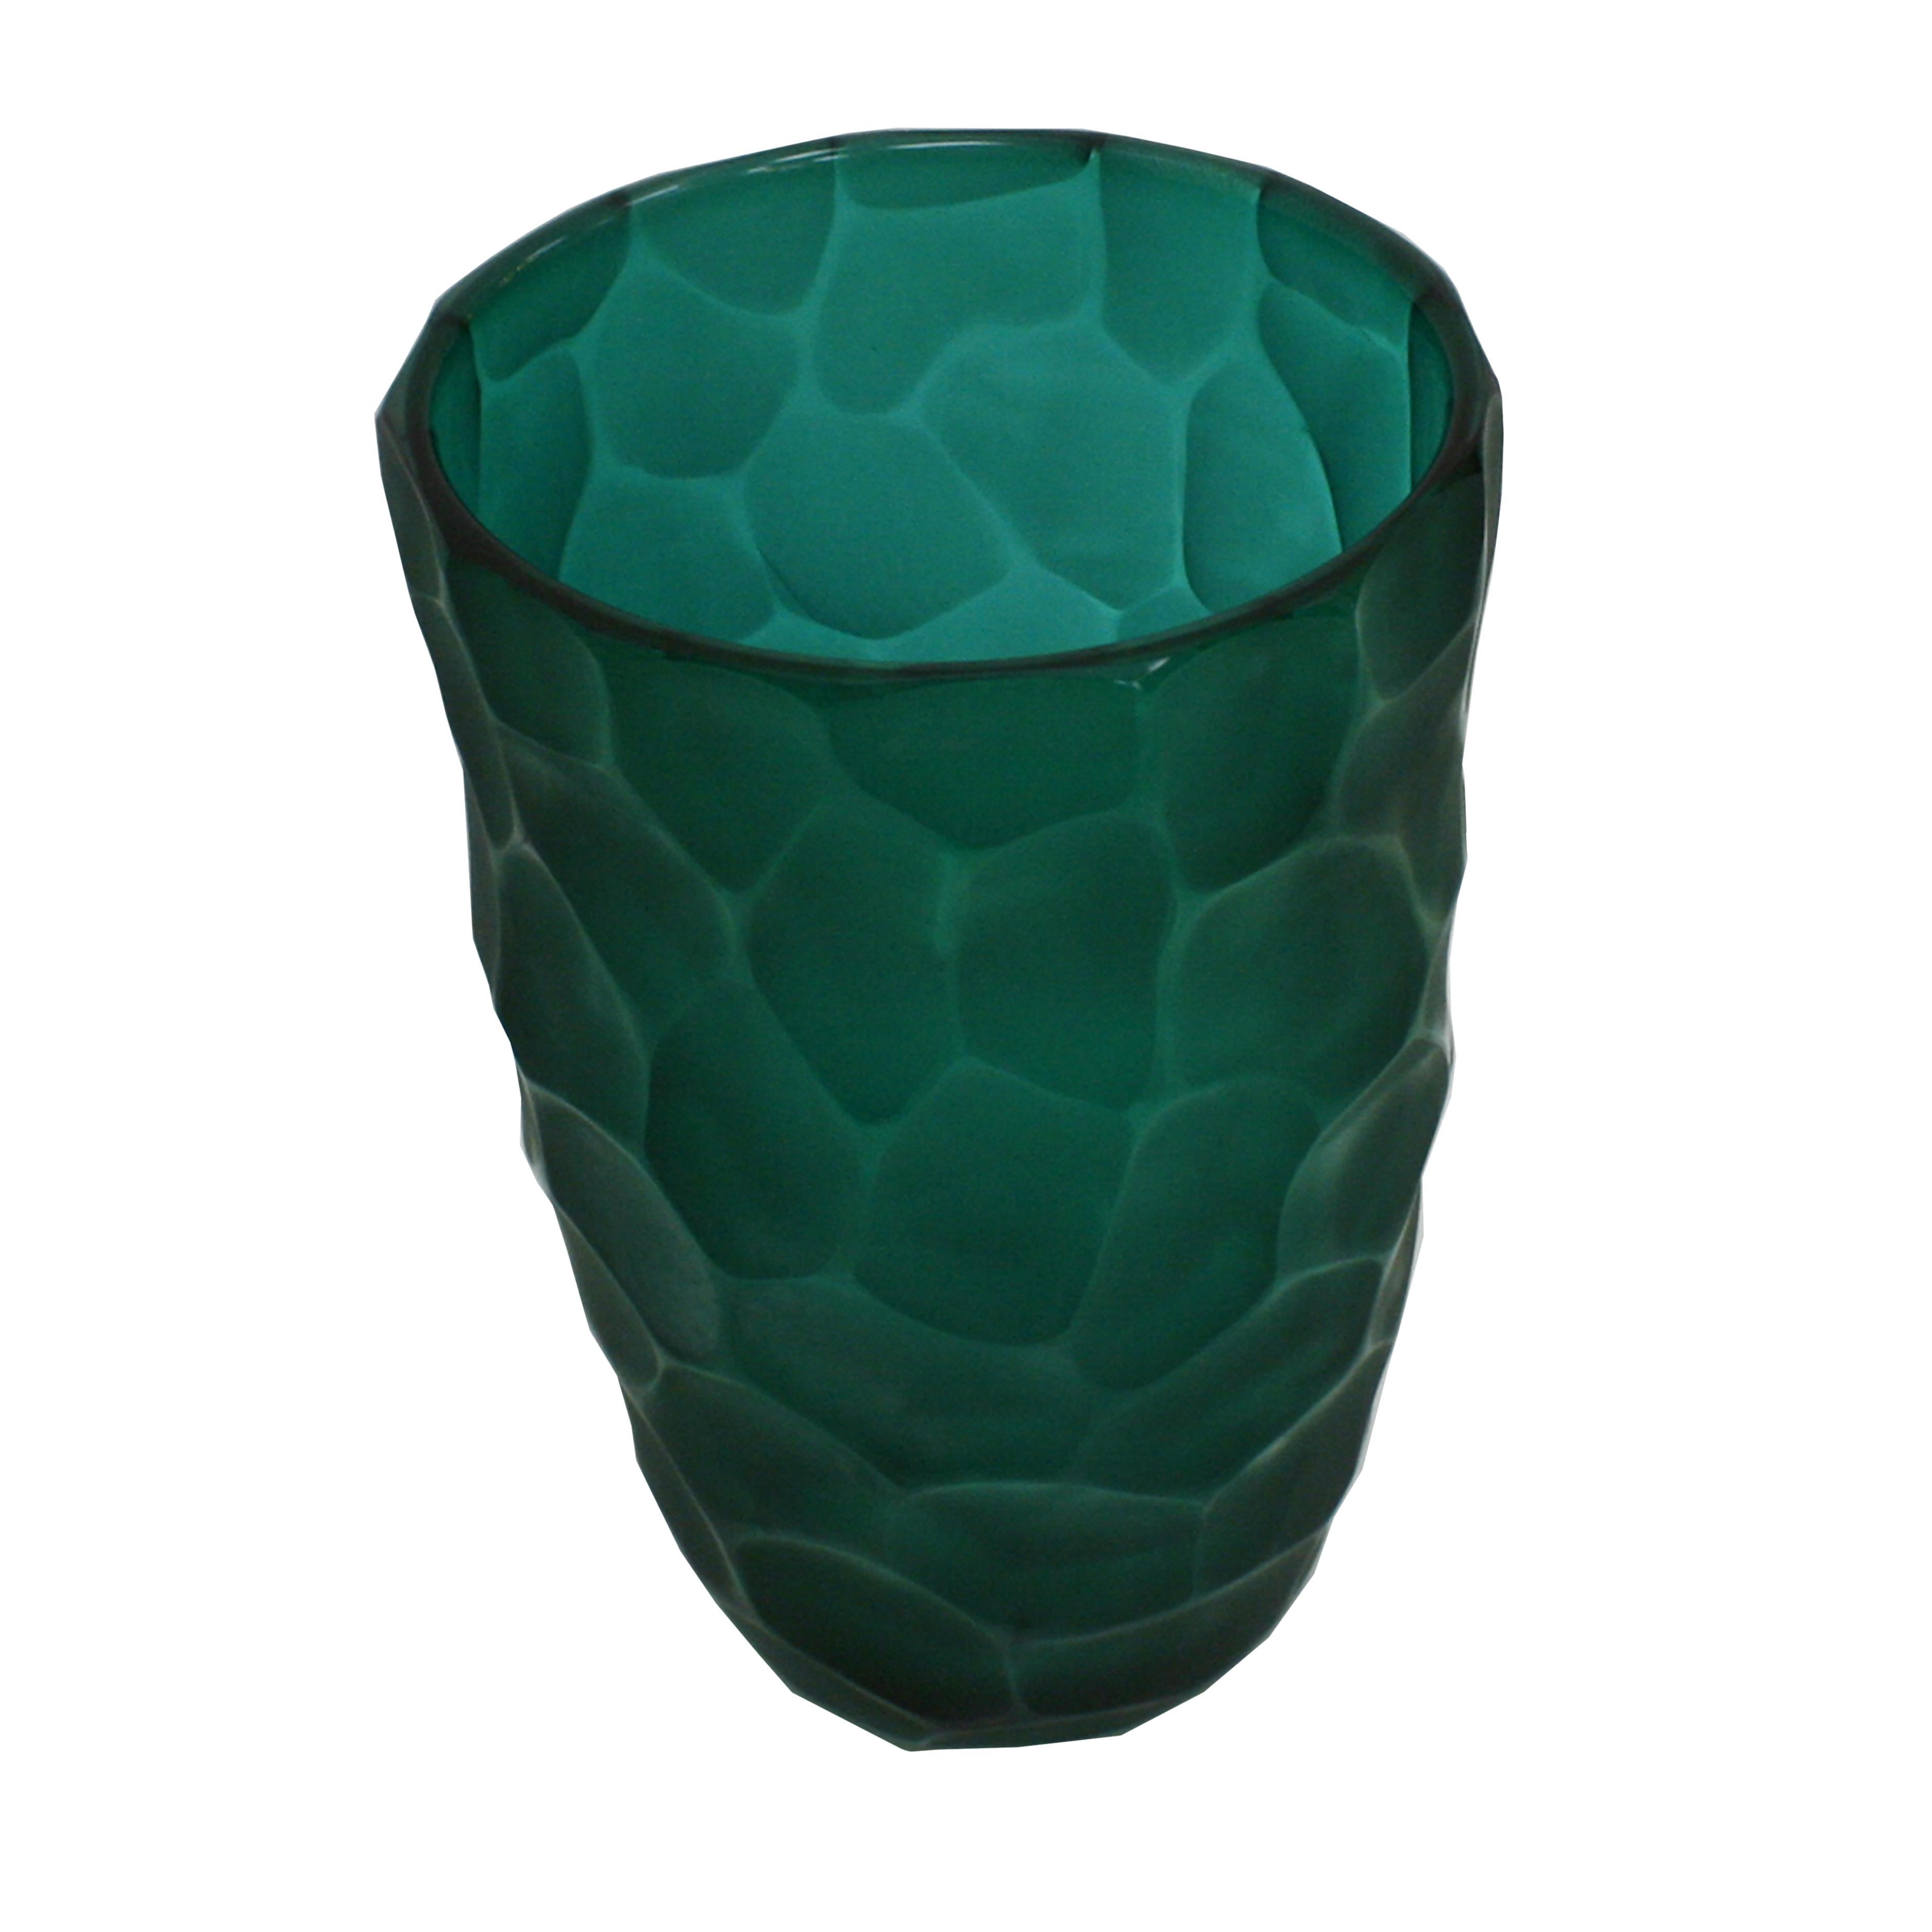 Skulpturale Vase, entworfen von Davide Dona, signiert auf dem Boden. Handgefertigtes facettiertes grünes Murano-Glas. Italien, 1970er Jahre.

Davide Dona' lernte die Glasherstellung zunächst in einem Paperweight-Ofen, dann ab 1998 im Betrieb seines